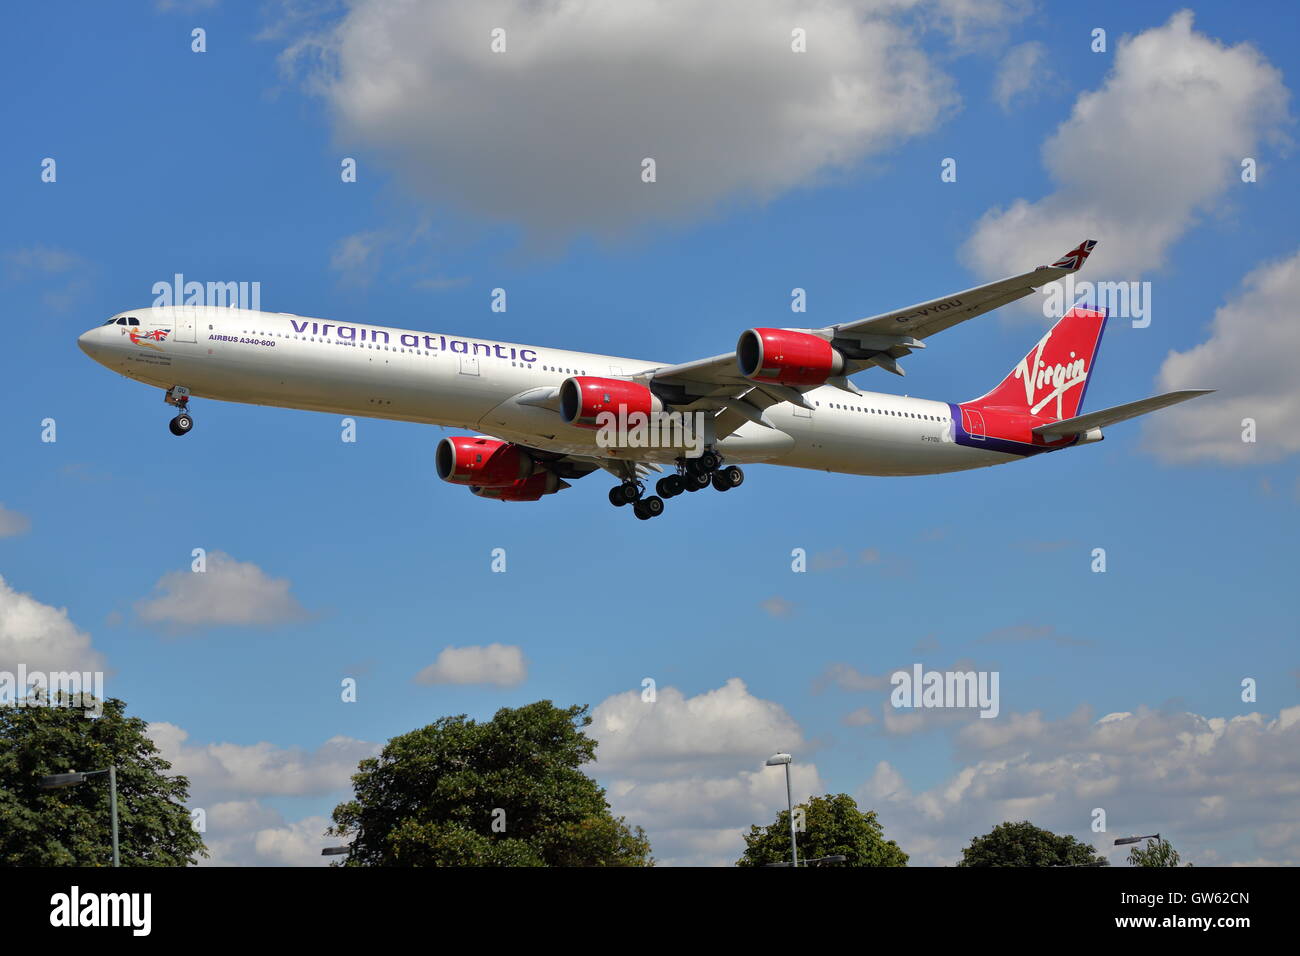 Virgin Atlantic Airbus A340-600 G-VYOU arrivant à l'aéroport Heathrow de Londres, UK Banque D'Images